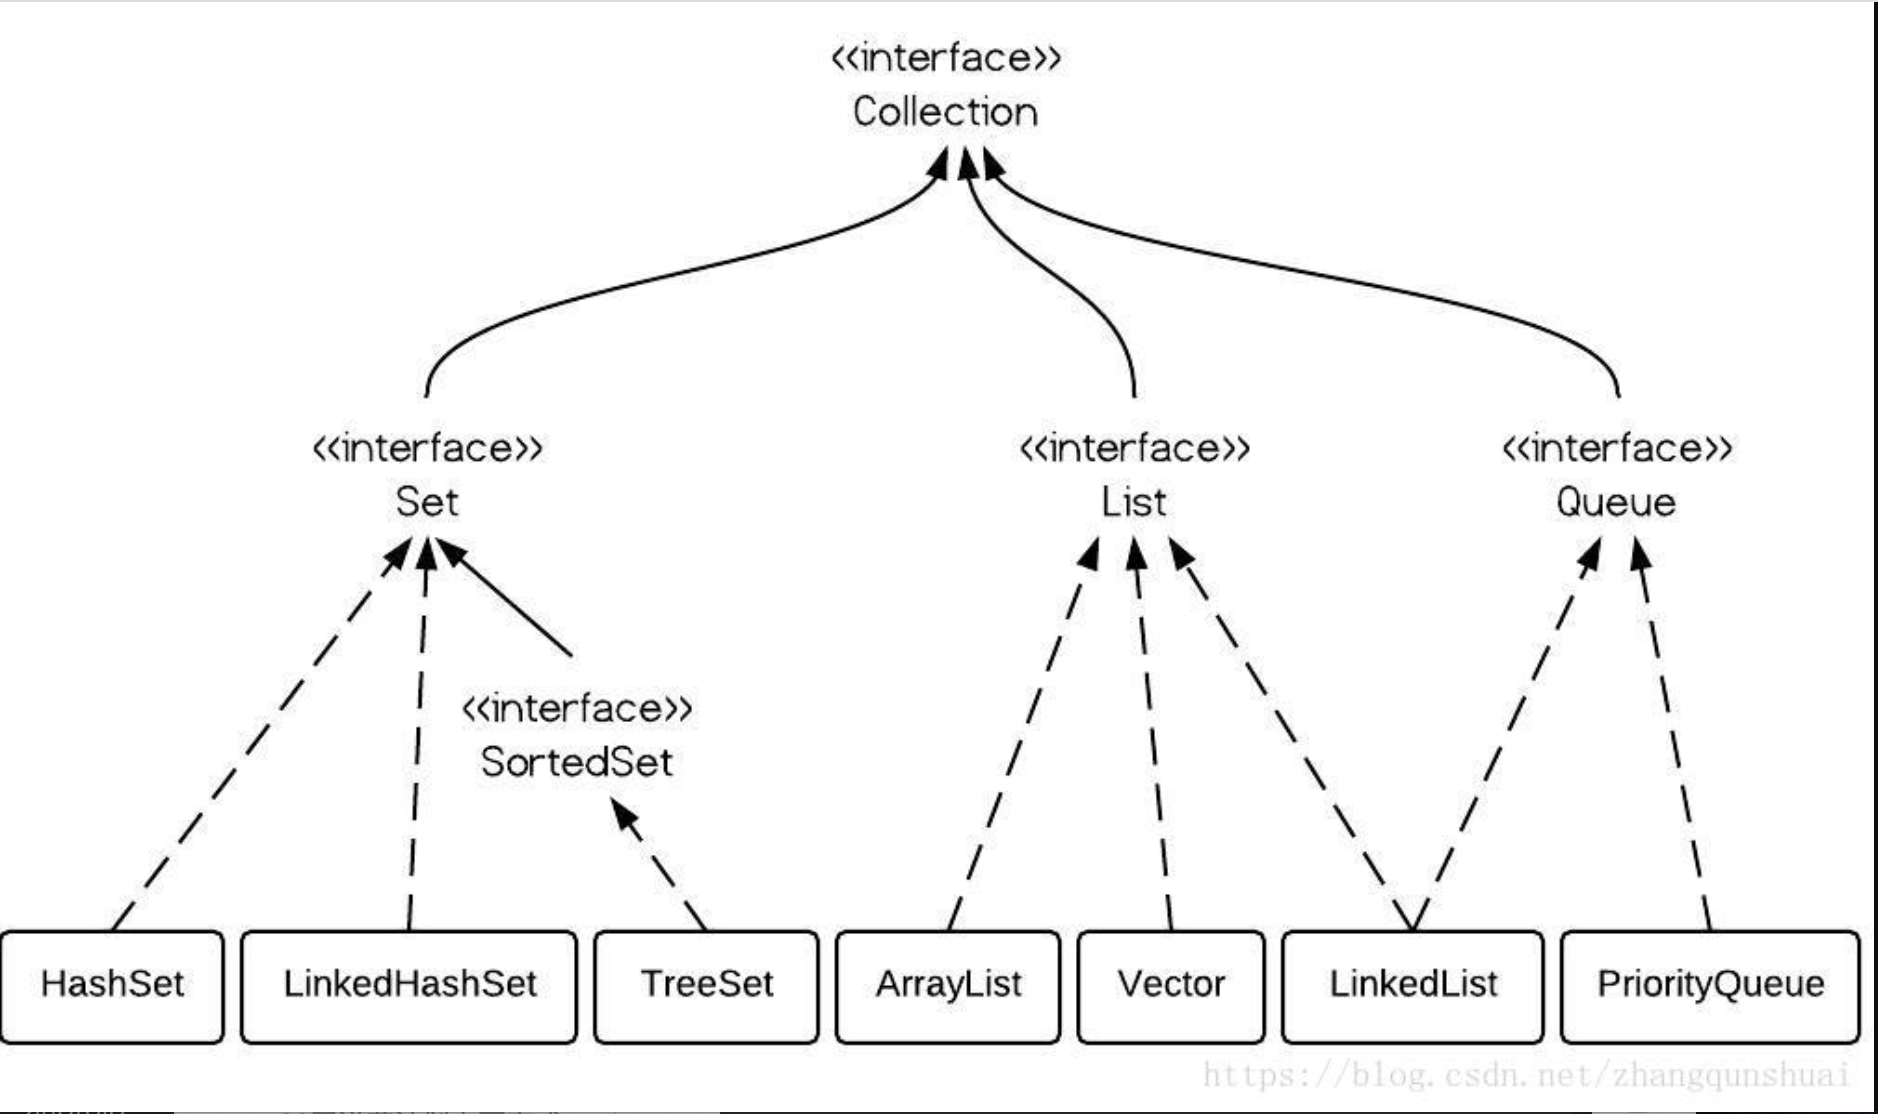 Класс интерфейс java. Иерархия интерфейсов коллекций java. Структура коллекций java. Java collections Framework иерархия. Java collections Hierarchy.